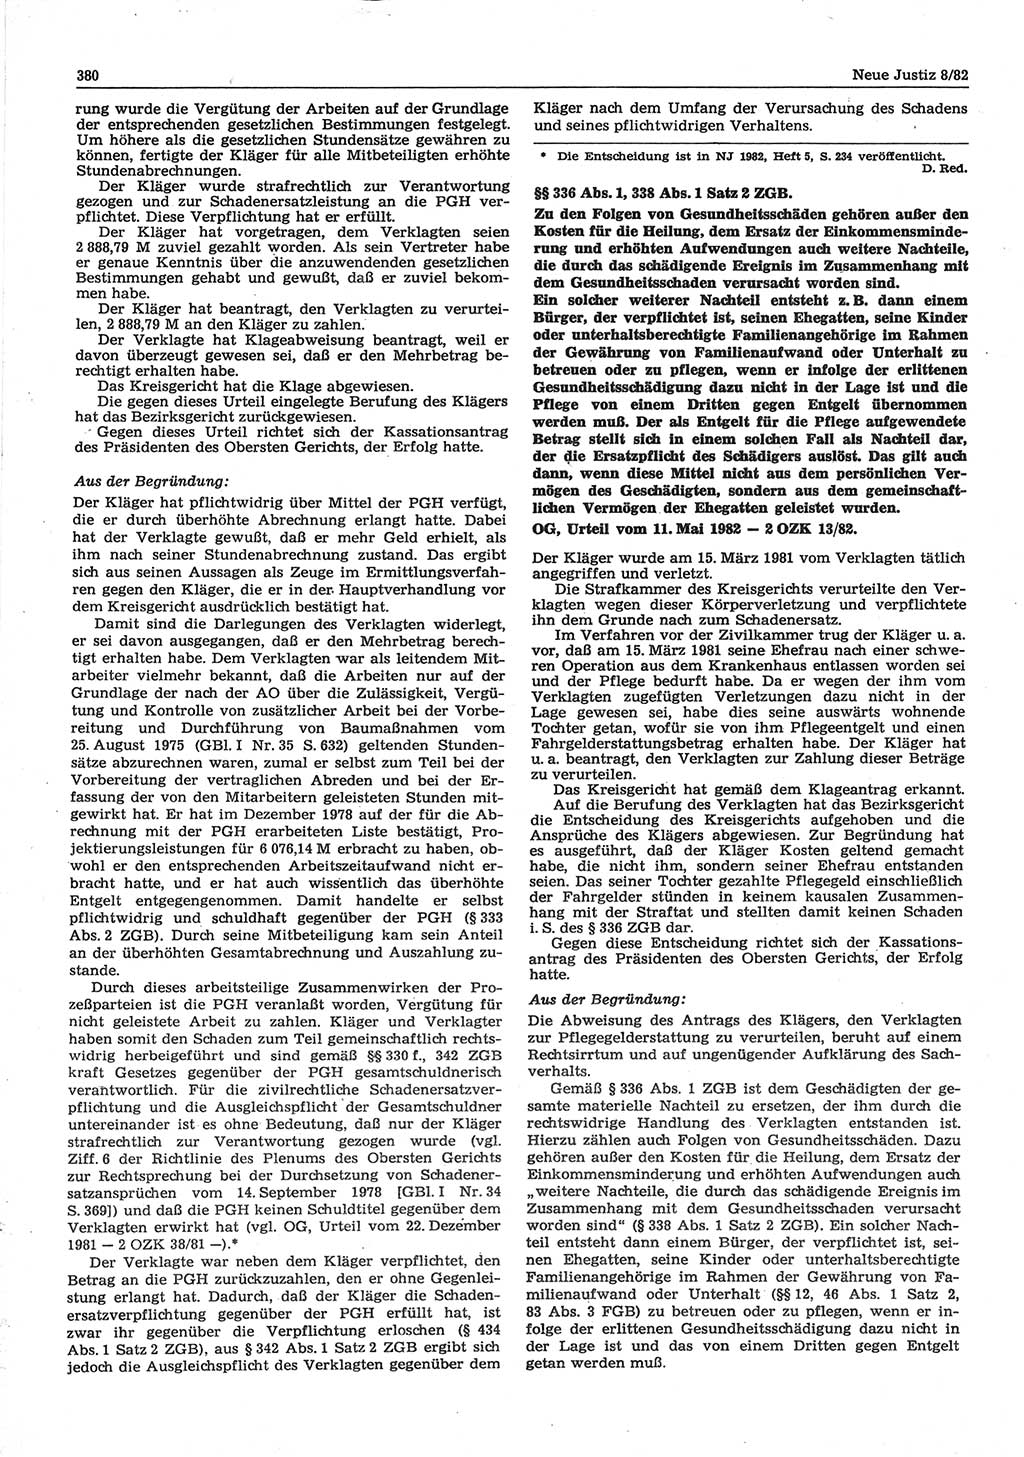 Neue Justiz (NJ), Zeitschrift für sozialistisches Recht und Gesetzlichkeit [Deutsche Demokratische Republik (DDR)], 36. Jahrgang 1982, Seite 380 (NJ DDR 1982, S. 380)